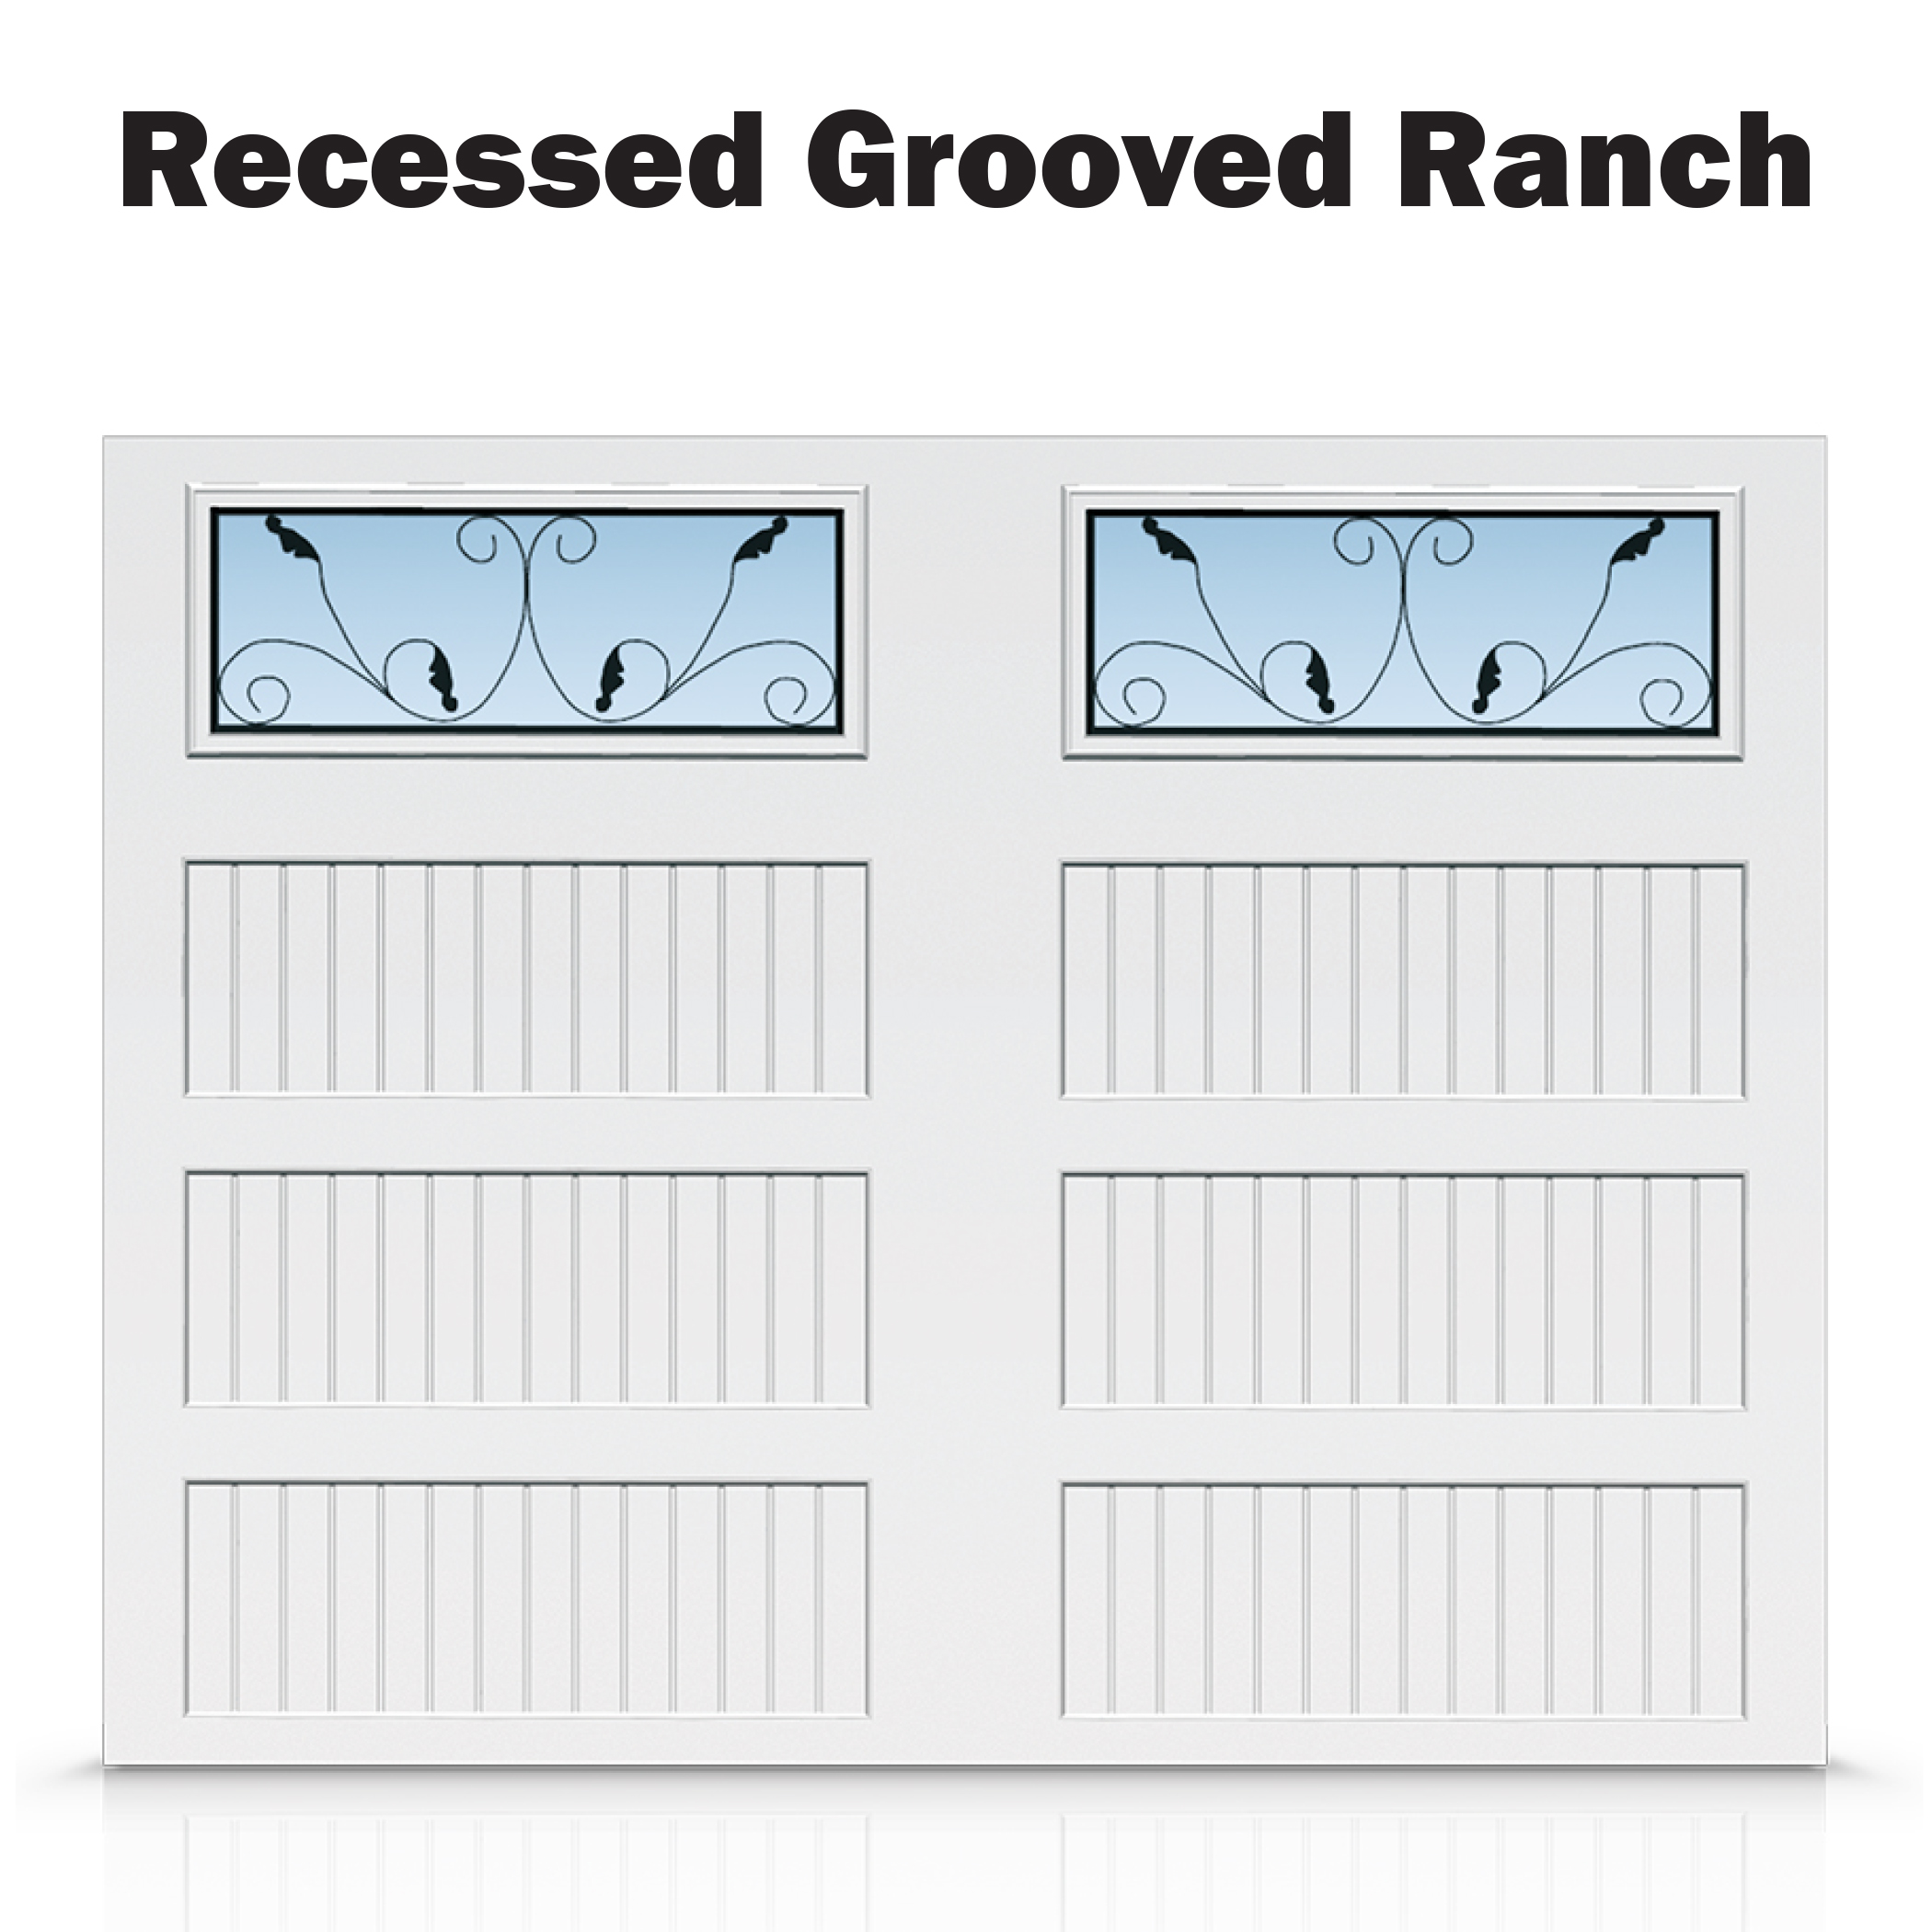 Recessed Grooved Ranch - Grandview.jpg